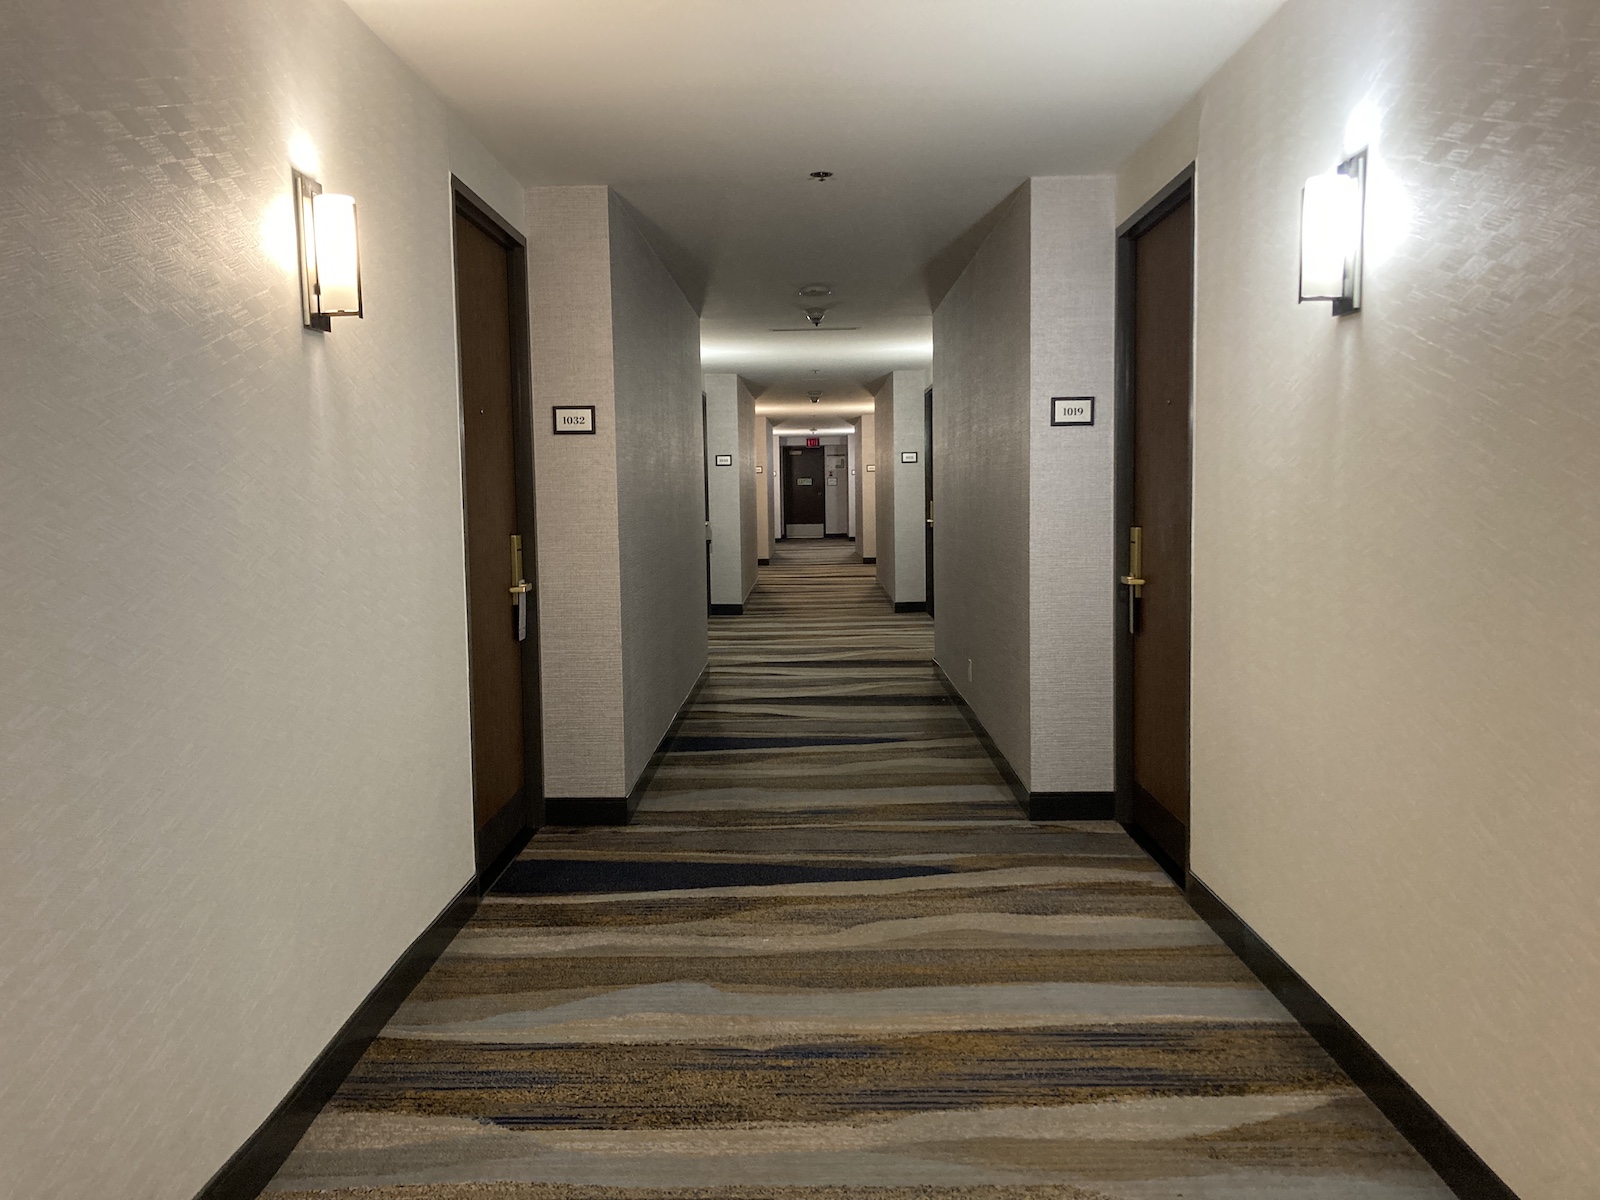 Image of guest floor hallway on 10th floor